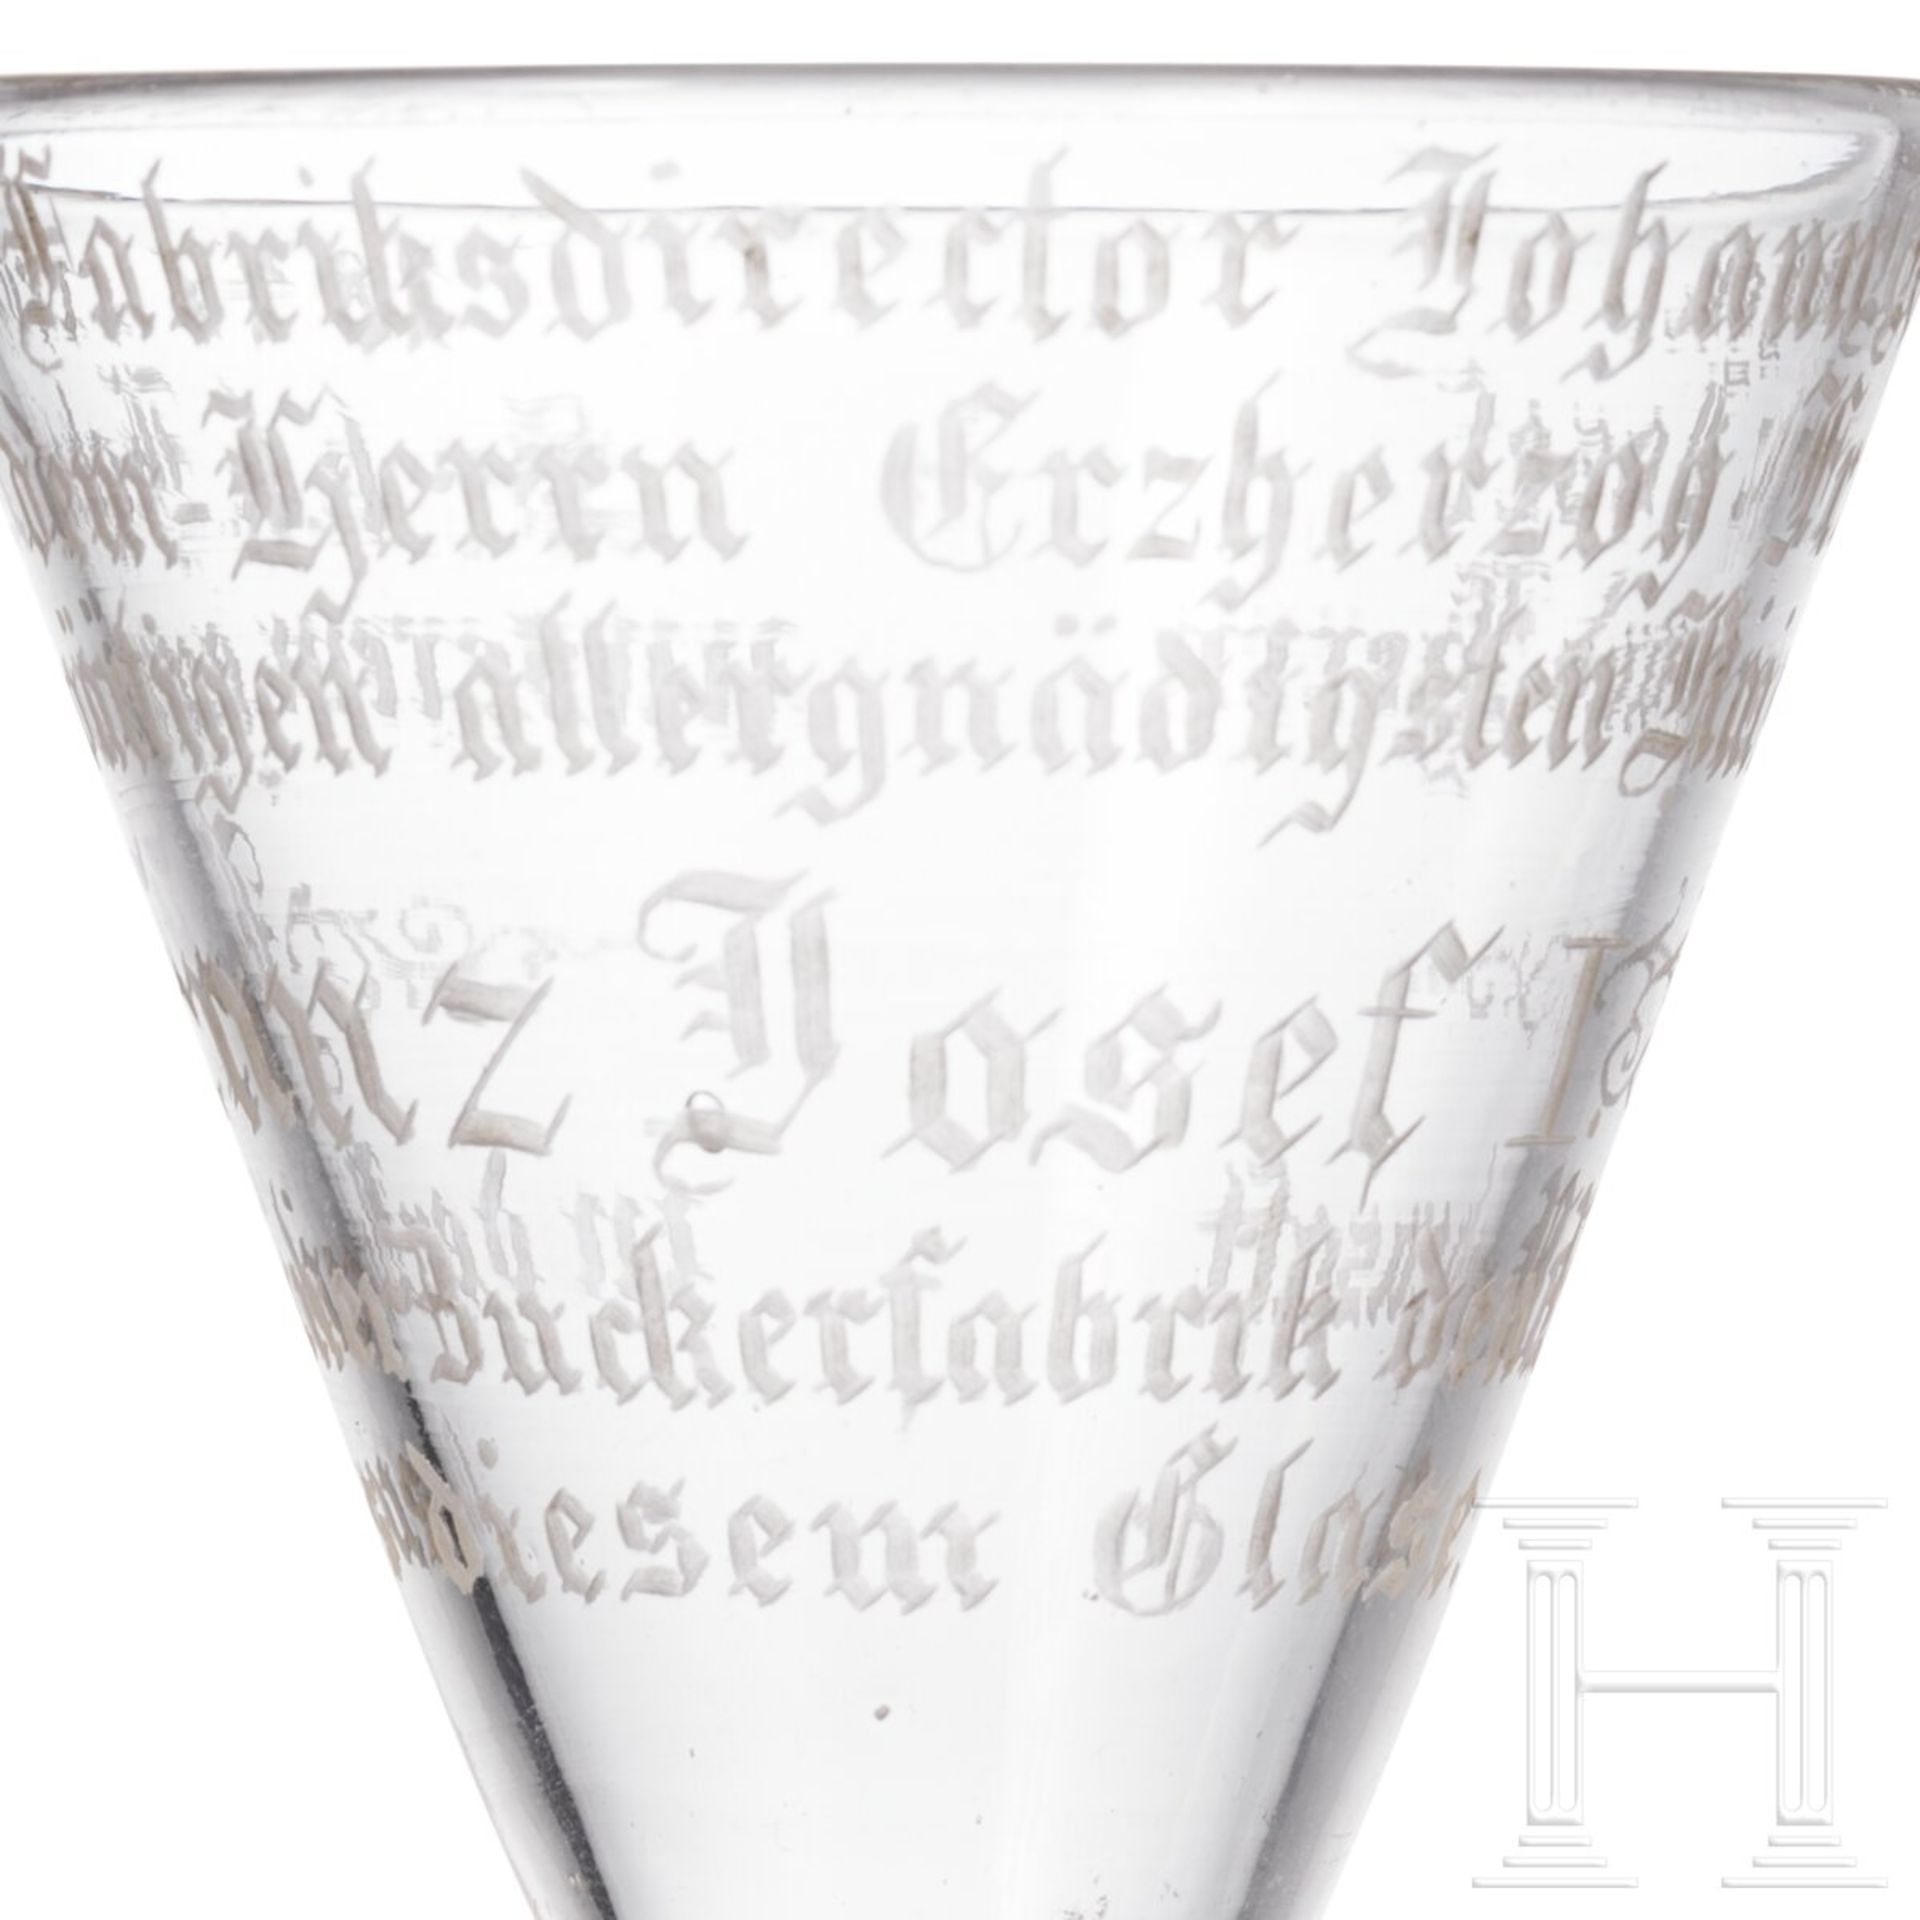 Kaiser Franz Joseph I. - Likörglas mit Geschenkinschrift, datiert 1847 - Bild 4 aus 4